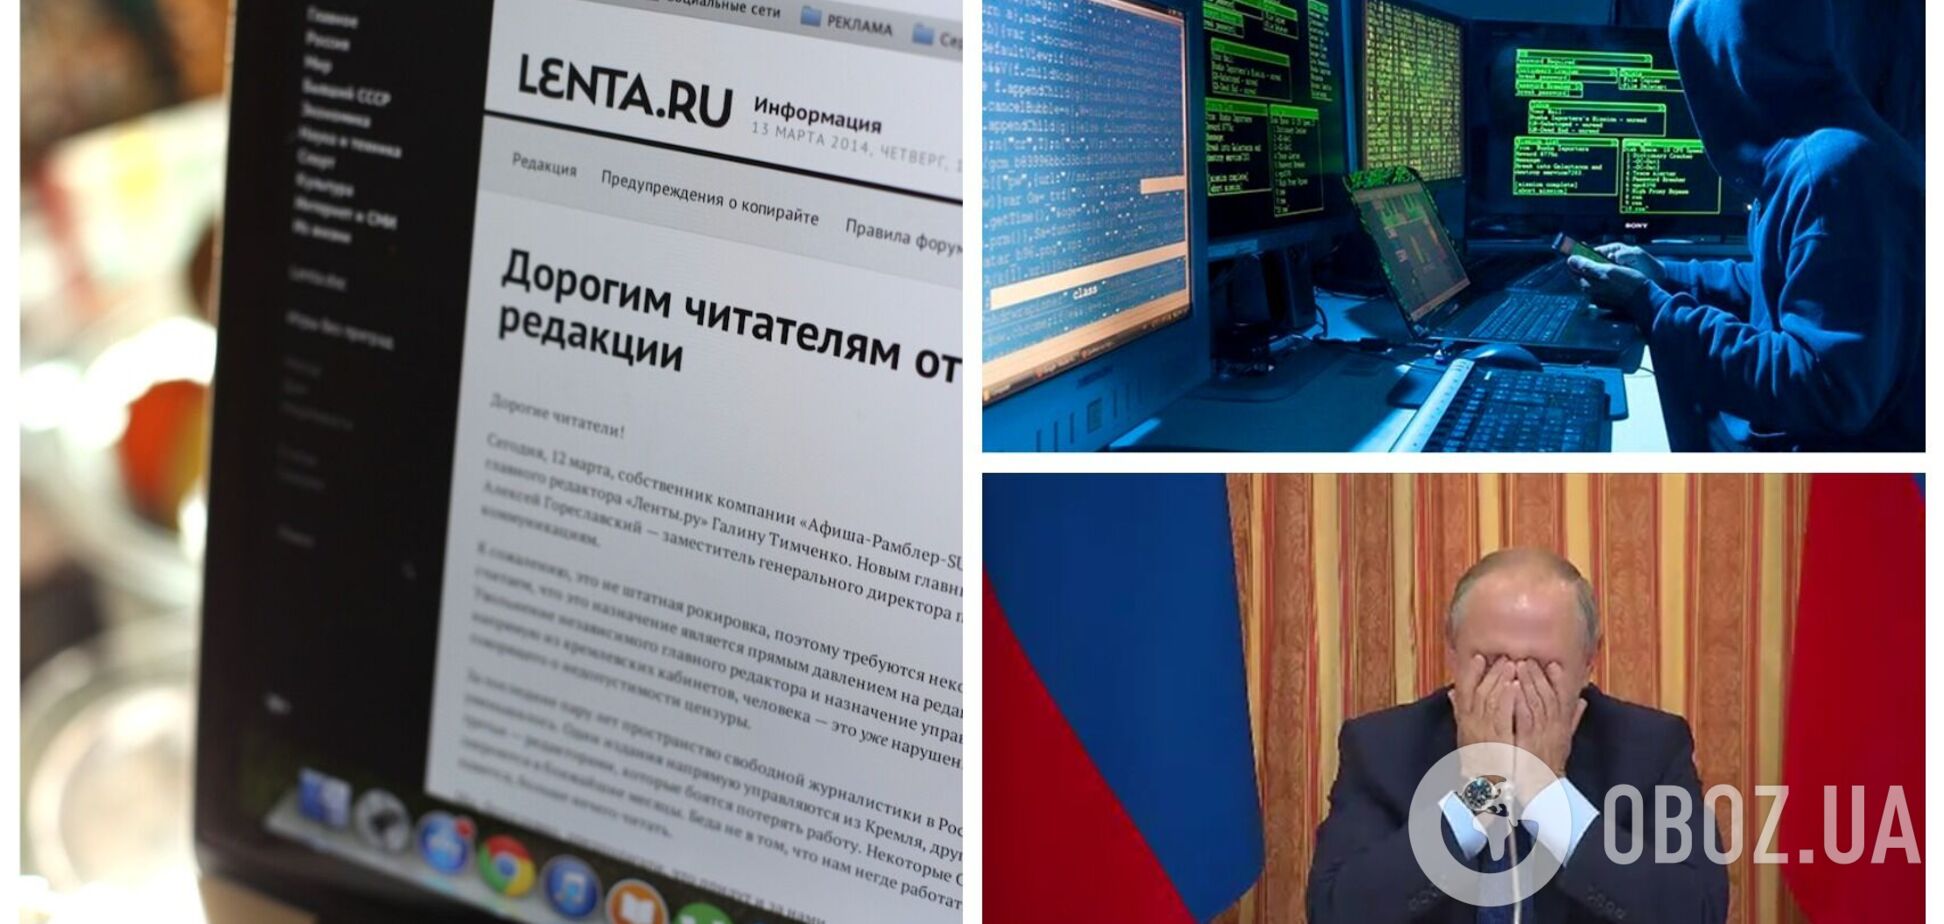 Це були не хакери: журналіст Lenta.ru зізнався у публікації антивоєнного тексту та назвав мотив